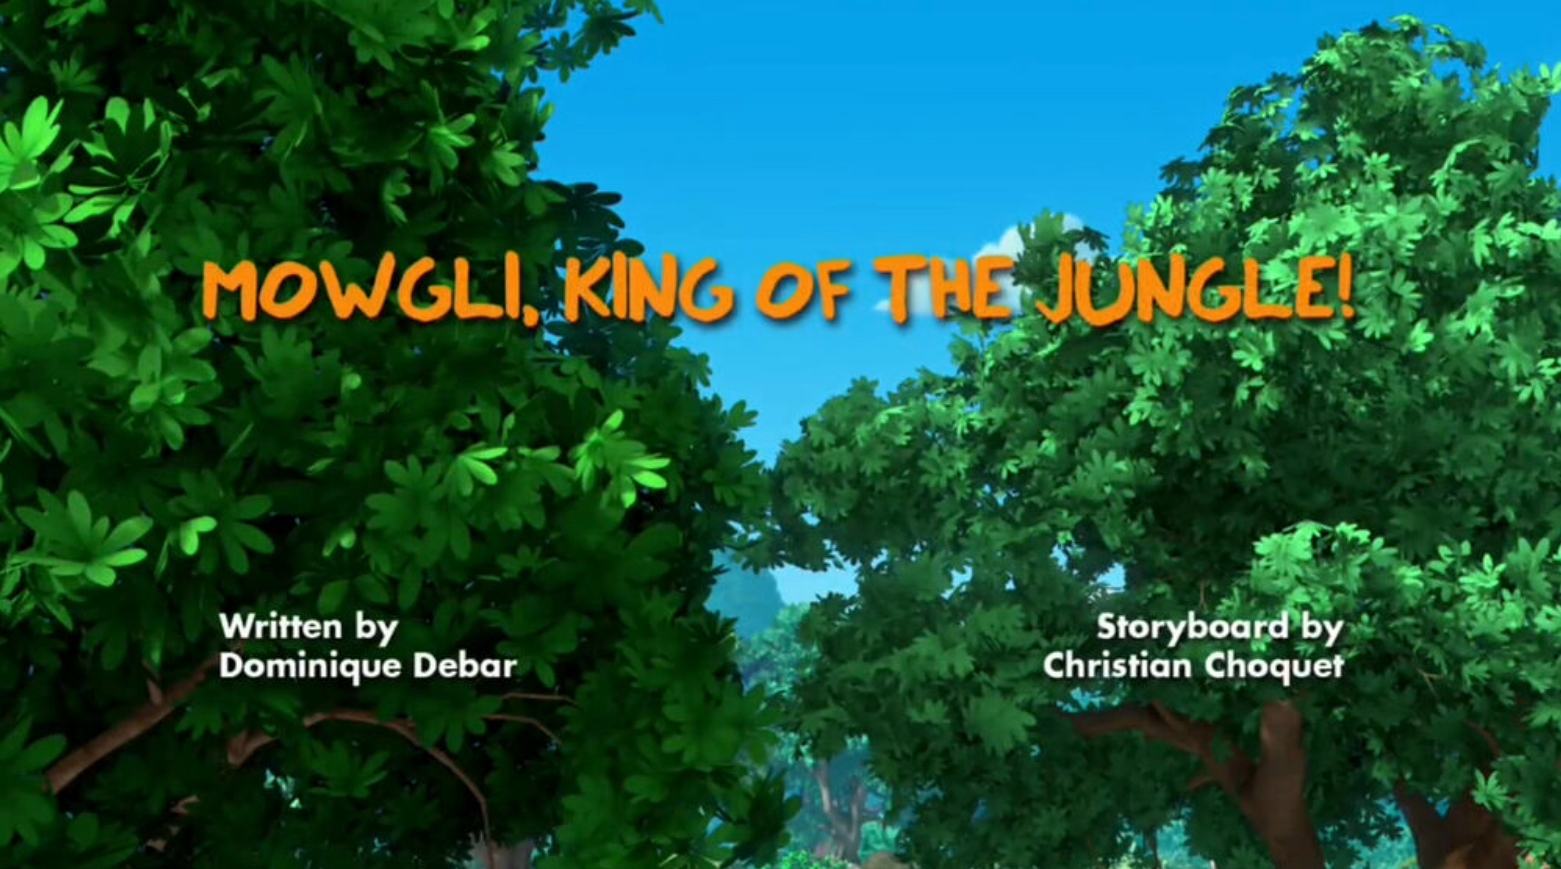 ludo king jungle book